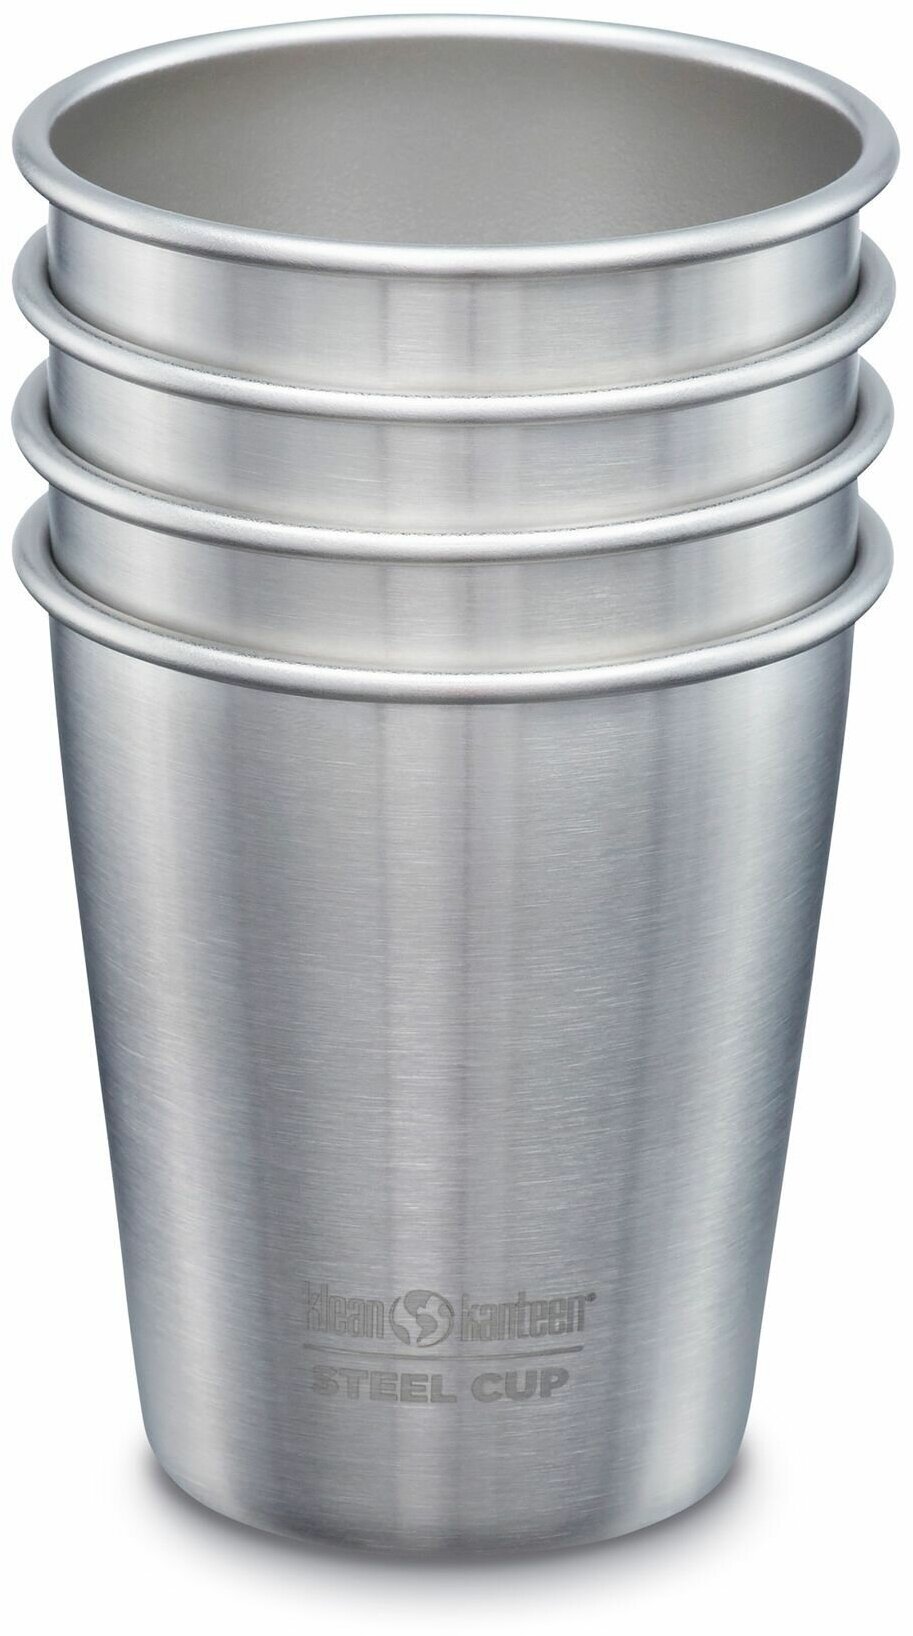 Набор одностенных стаканов Klean Kanteen Steel Cup 10oz (296 мл) Brushed Stainless, - 4 шт